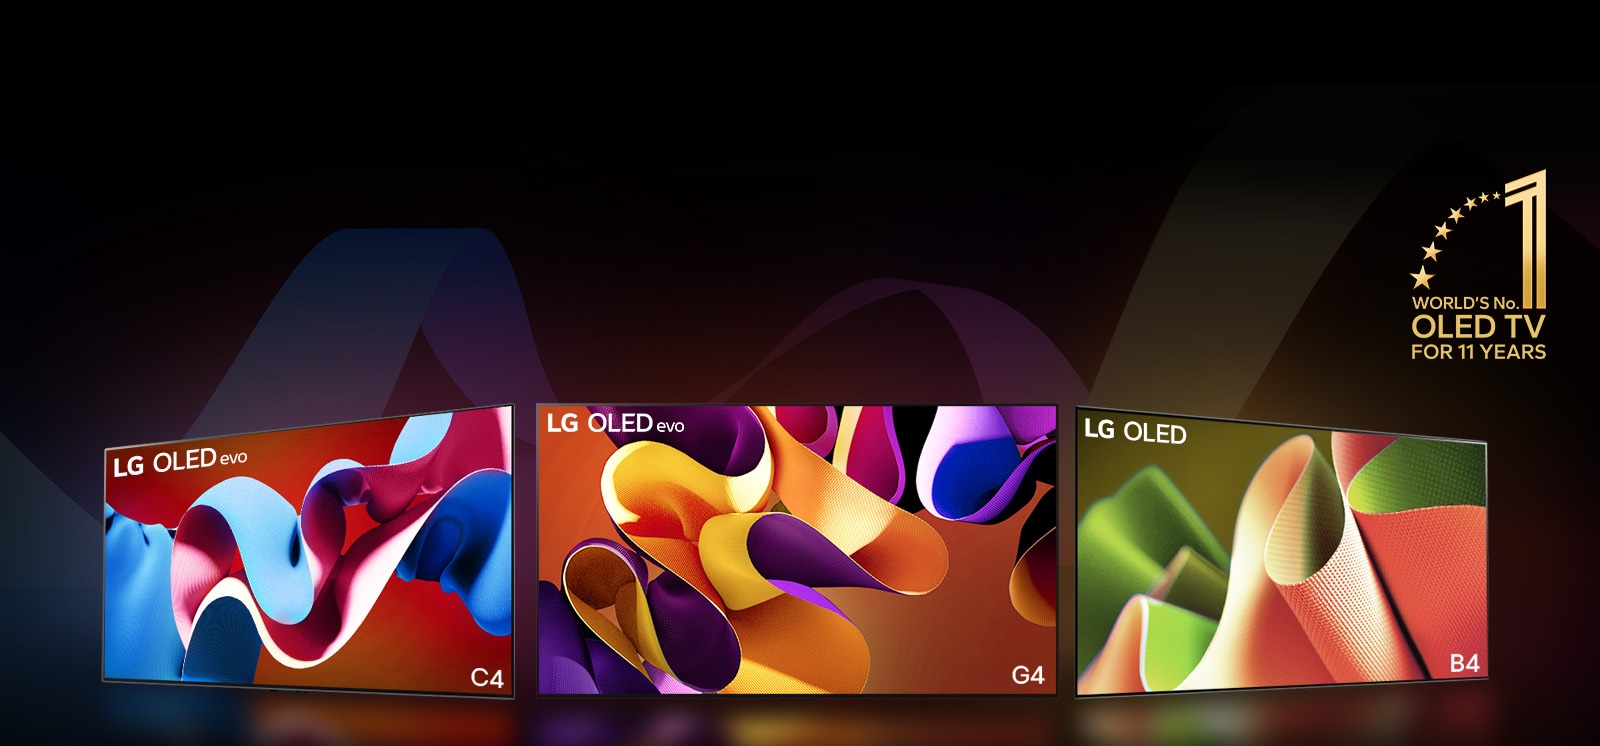 PC；LG OLED evo G4、LG OLED evo C4 和 LG OLED B4 並排，每個都在螢幕上顯示不同色彩的抽象藝術作品。每台電視都發出光投射到地面上。連續 11 年世界第一的 OLED TV 金色標誌位於右上角。  MO：LG OLED evo G4、LG OLED evo C4 和 LG OLED B4 排成一列，每個都在螢幕上顯示不同色彩的抽象藝術作品。每台電視都發出光投射到地面上。連續 11 年世界第一的 OLED TV 金色標誌位於右上角。